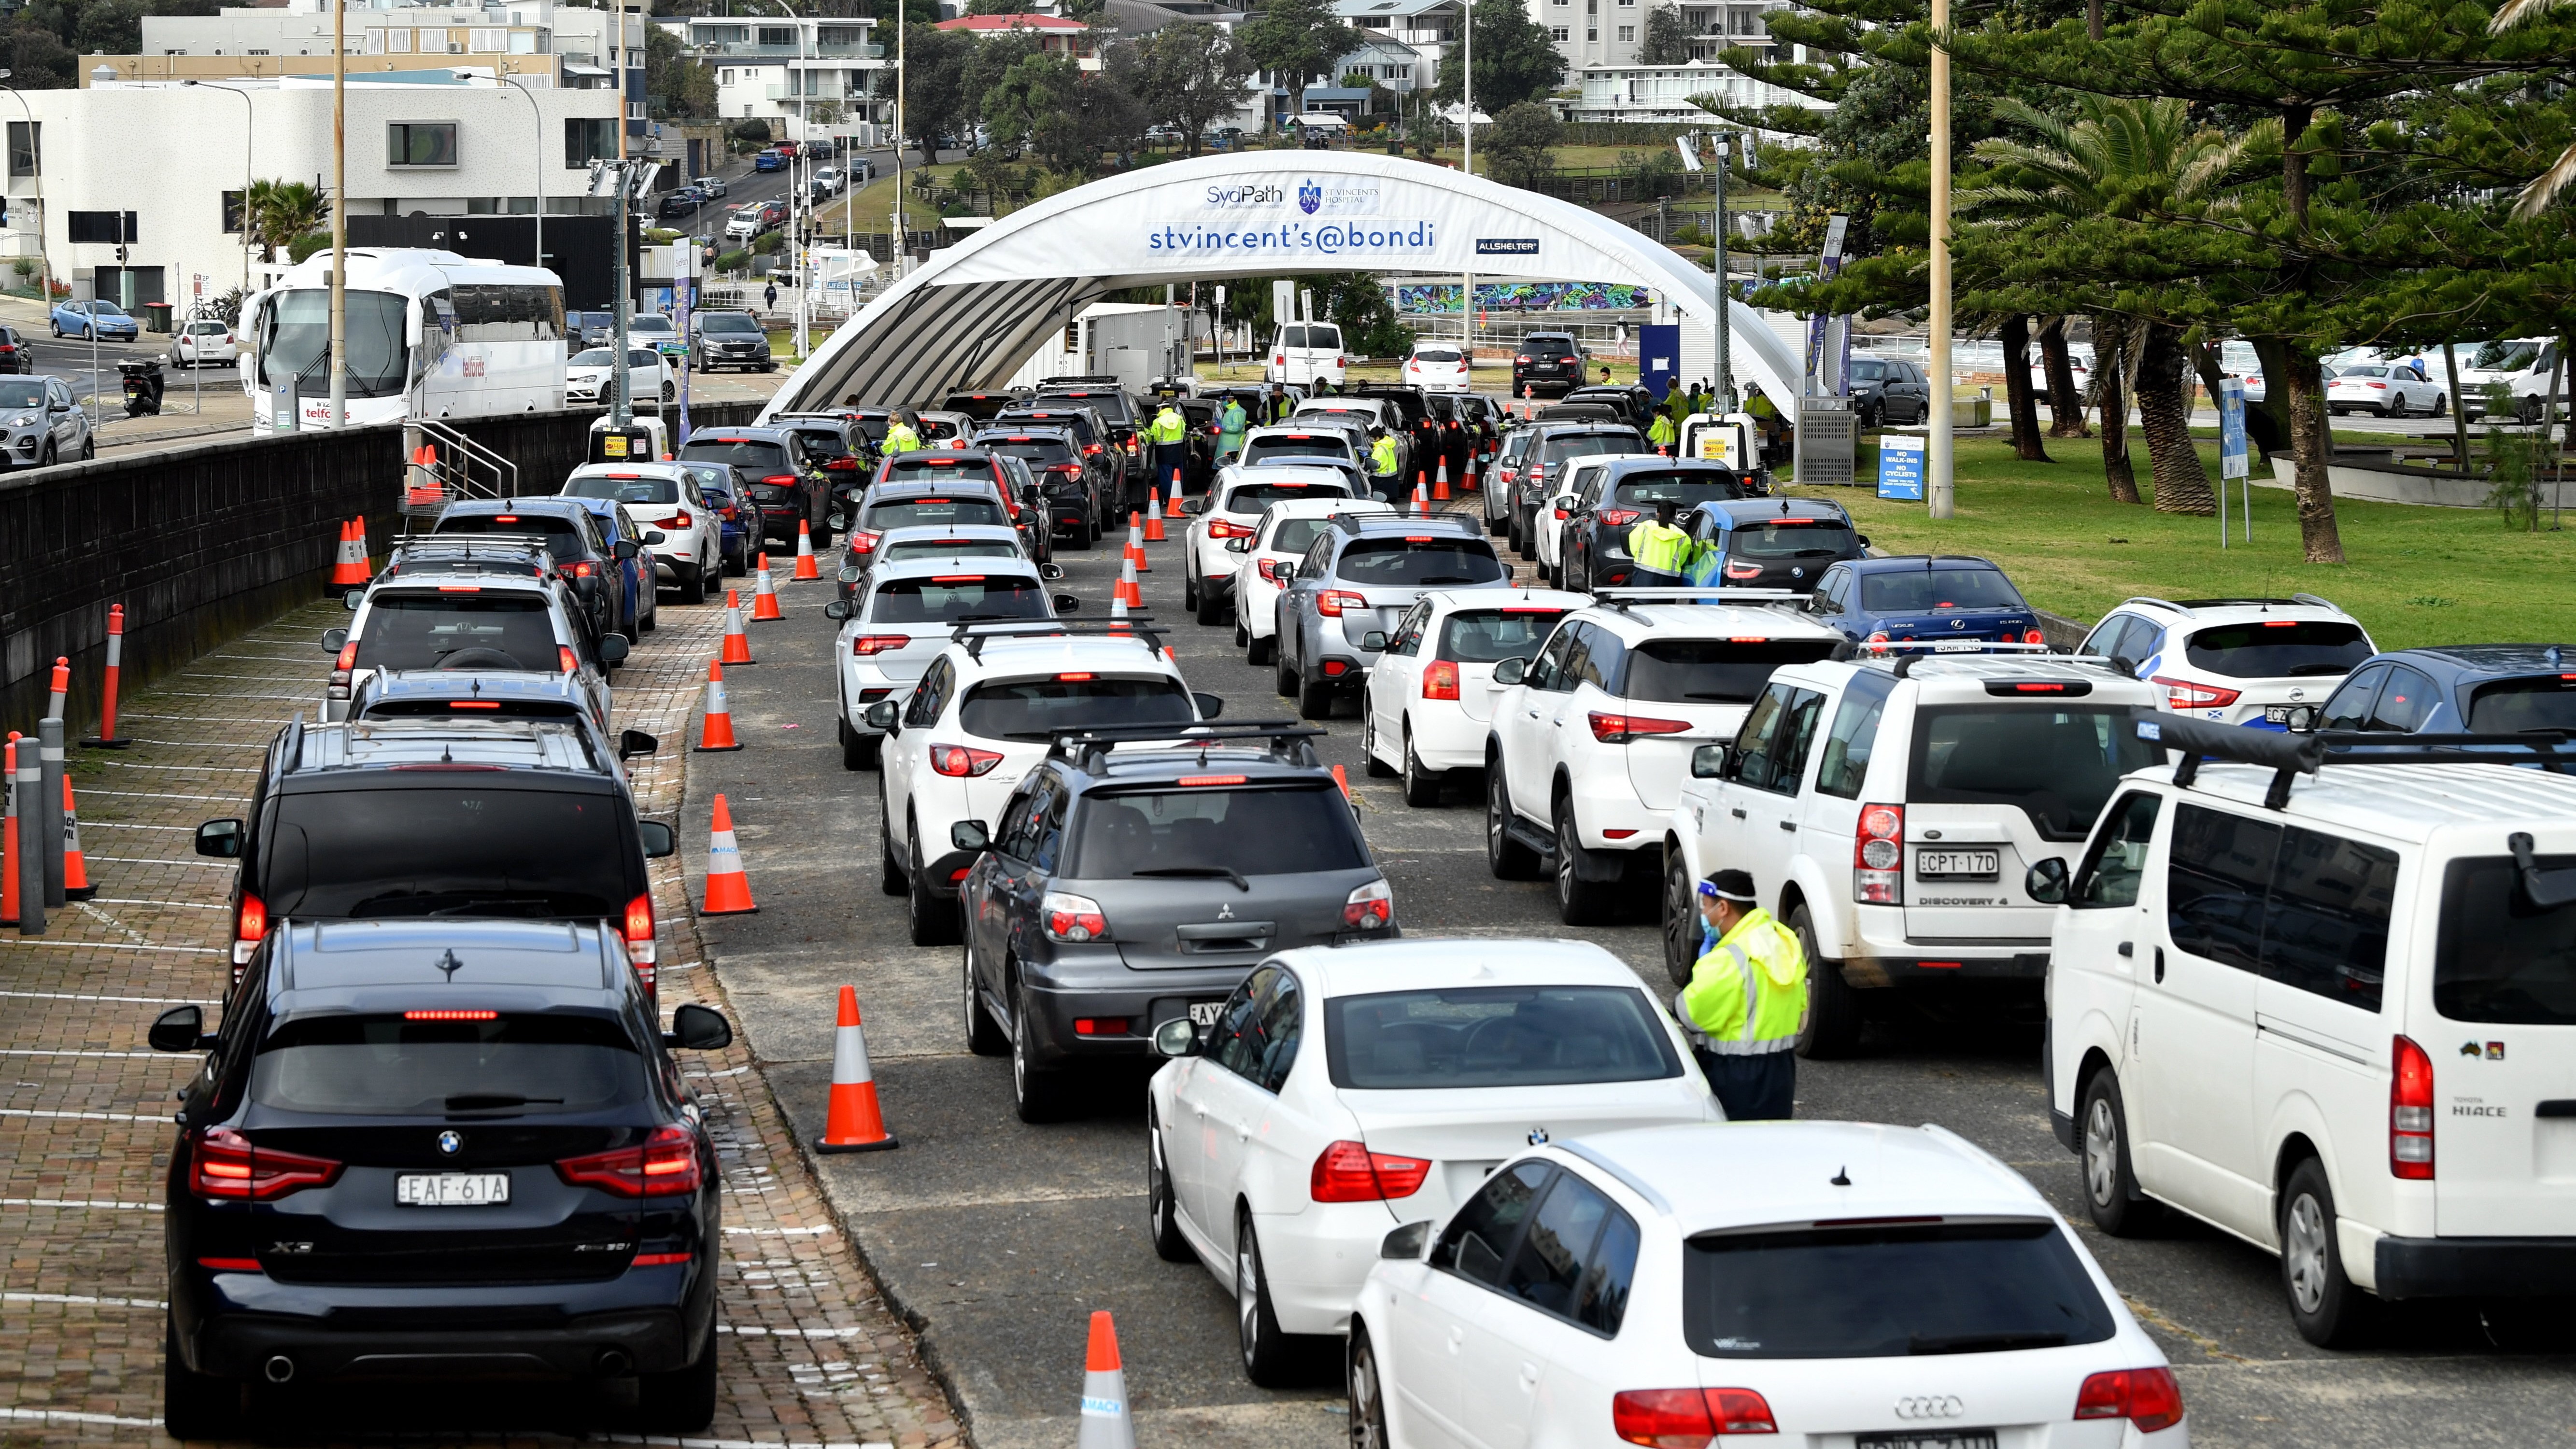 Koronavírus-tesztre váró emberek egy autós tesztállomáson Bondiban, Sydney egyik elővárosában 2021. június 22-én. (Fotó: MTI/EPA/AAP/Joel Carrett)